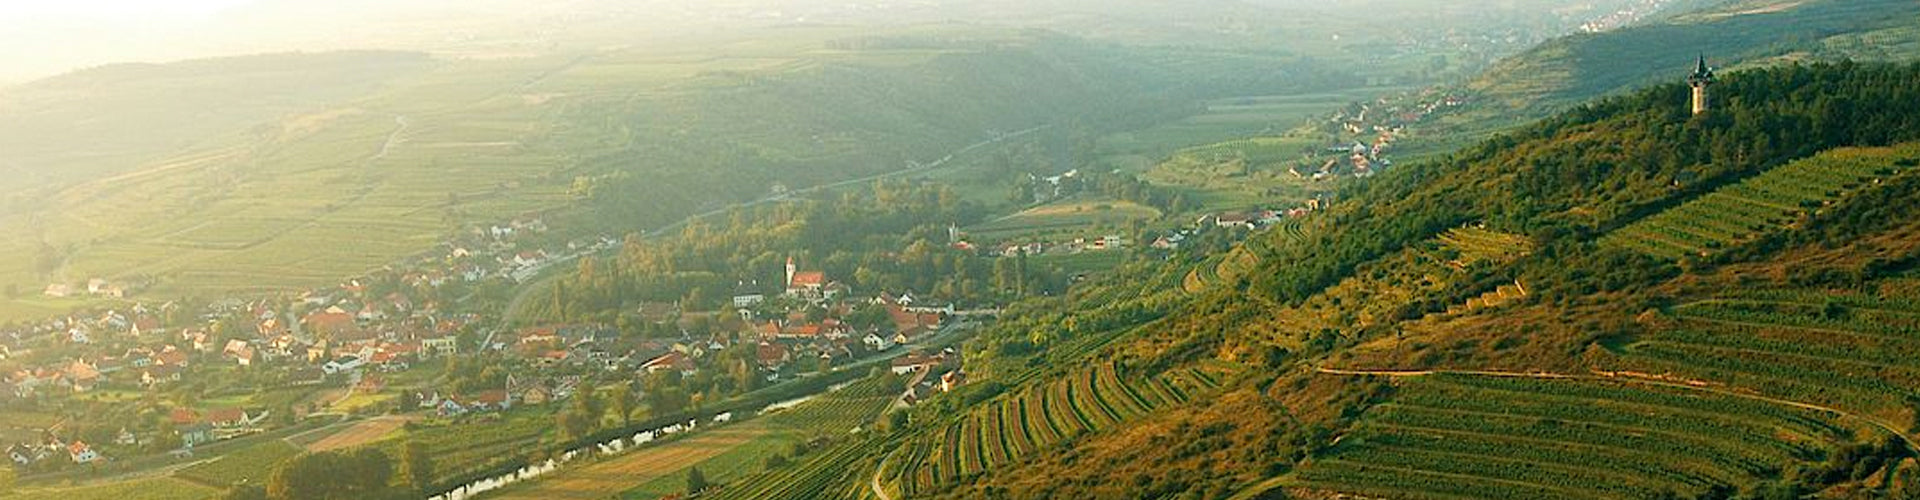 Vineyards in the Kamptal Wine Region of Austria